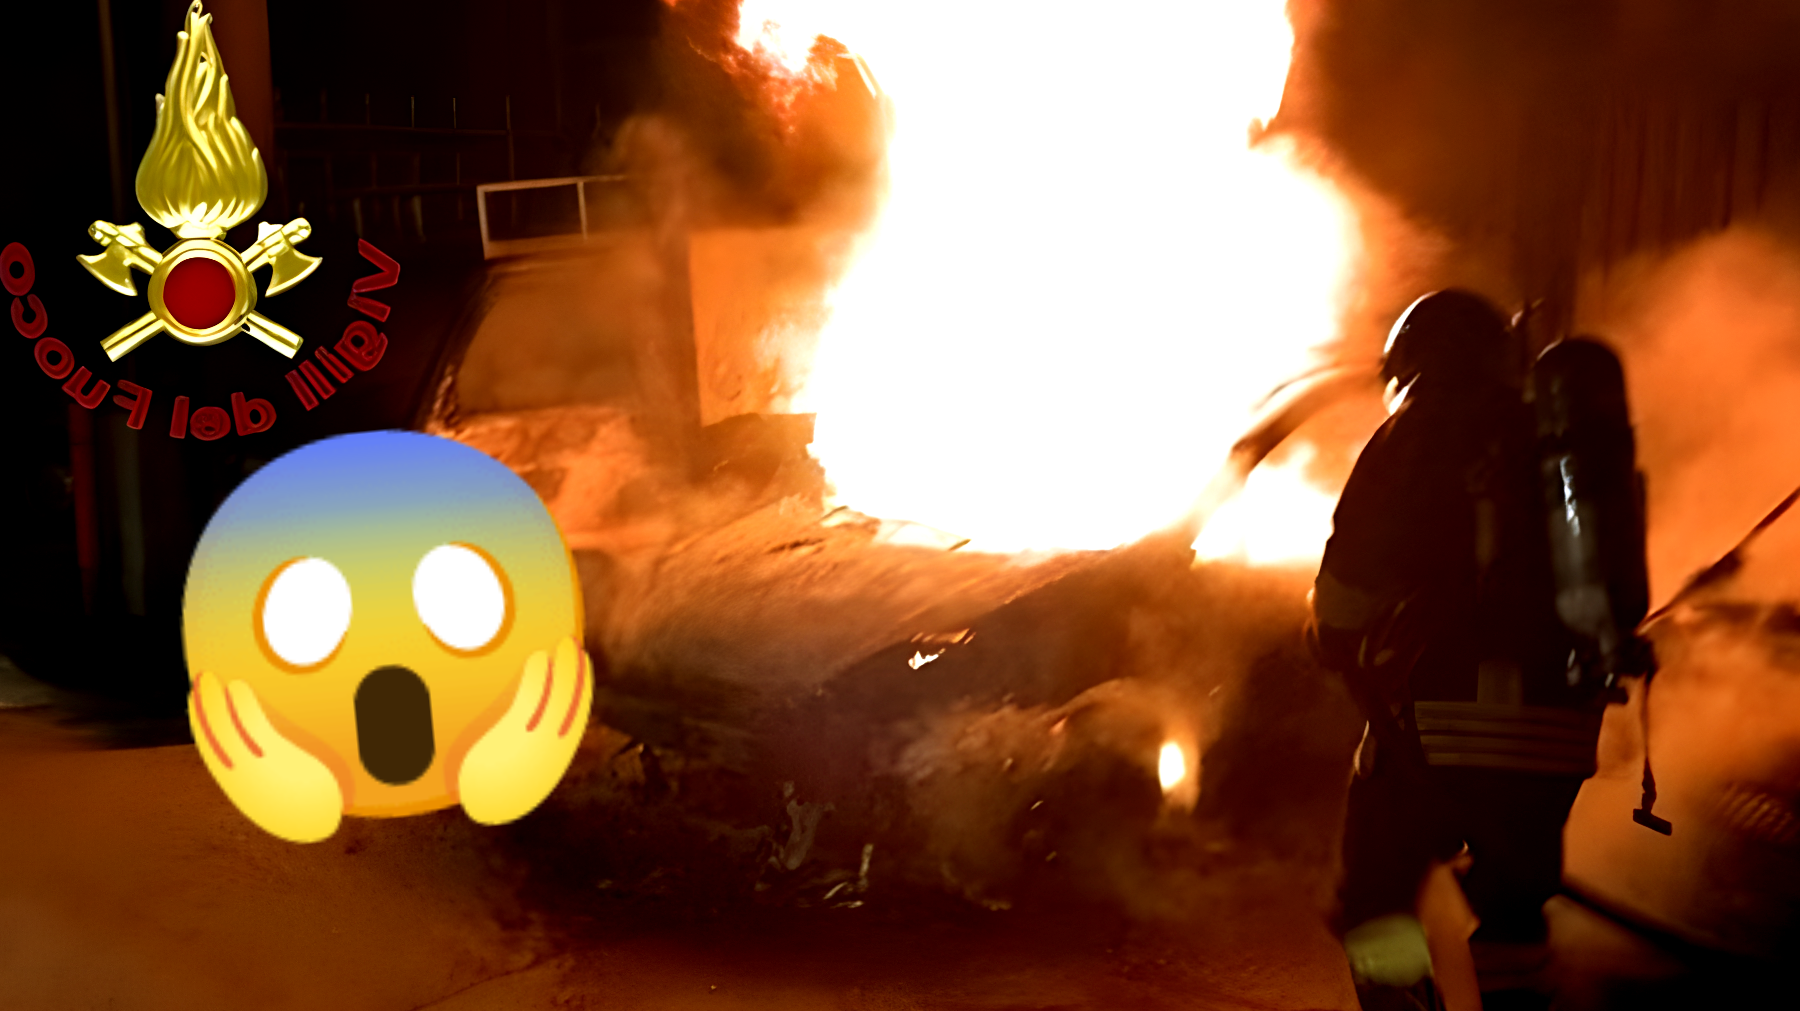 Incendio misterioso devasta la notte: 4 auto in cenere, cosa sta accadendo?